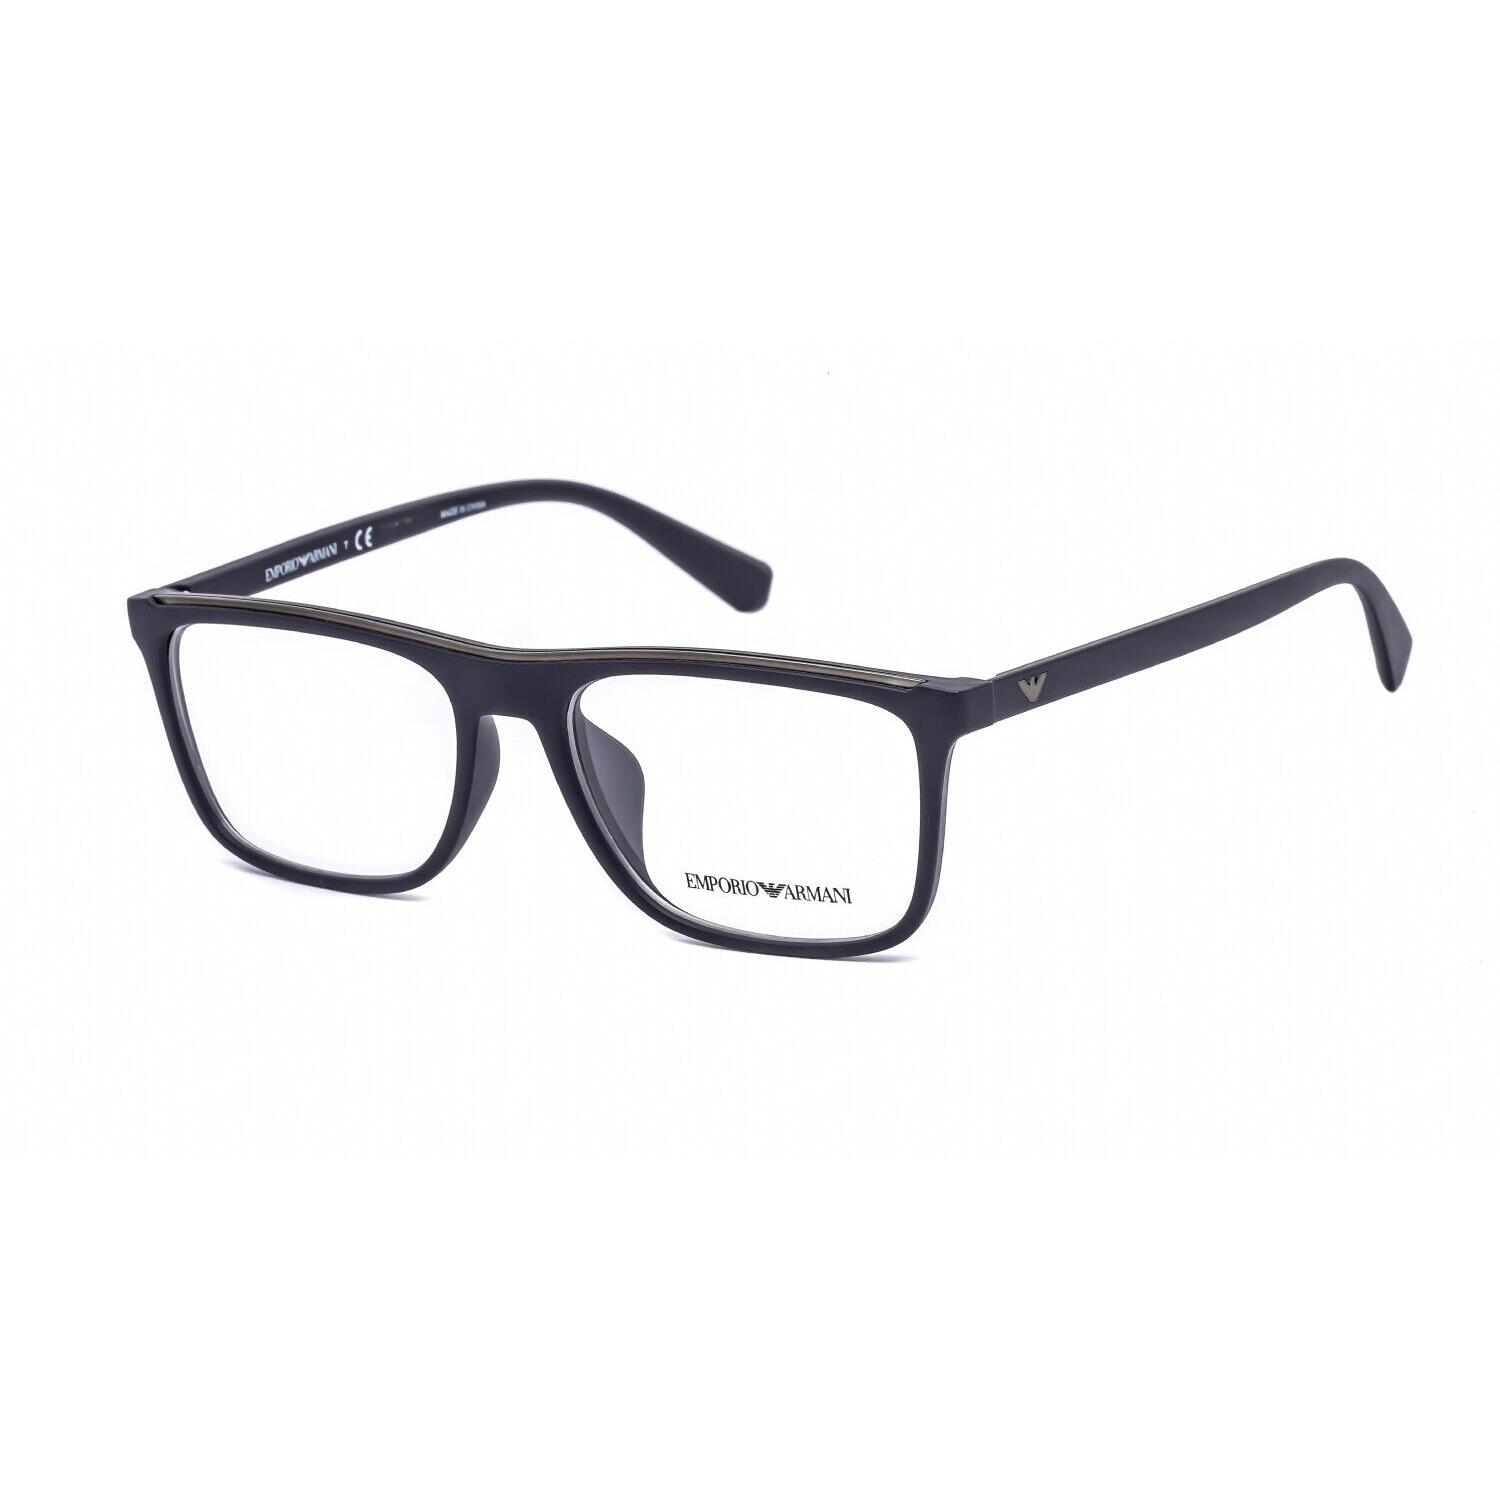 Emporio Armani Men Eyeglasses EA3124 5638 Blue / Clear Demo Lens 55mm